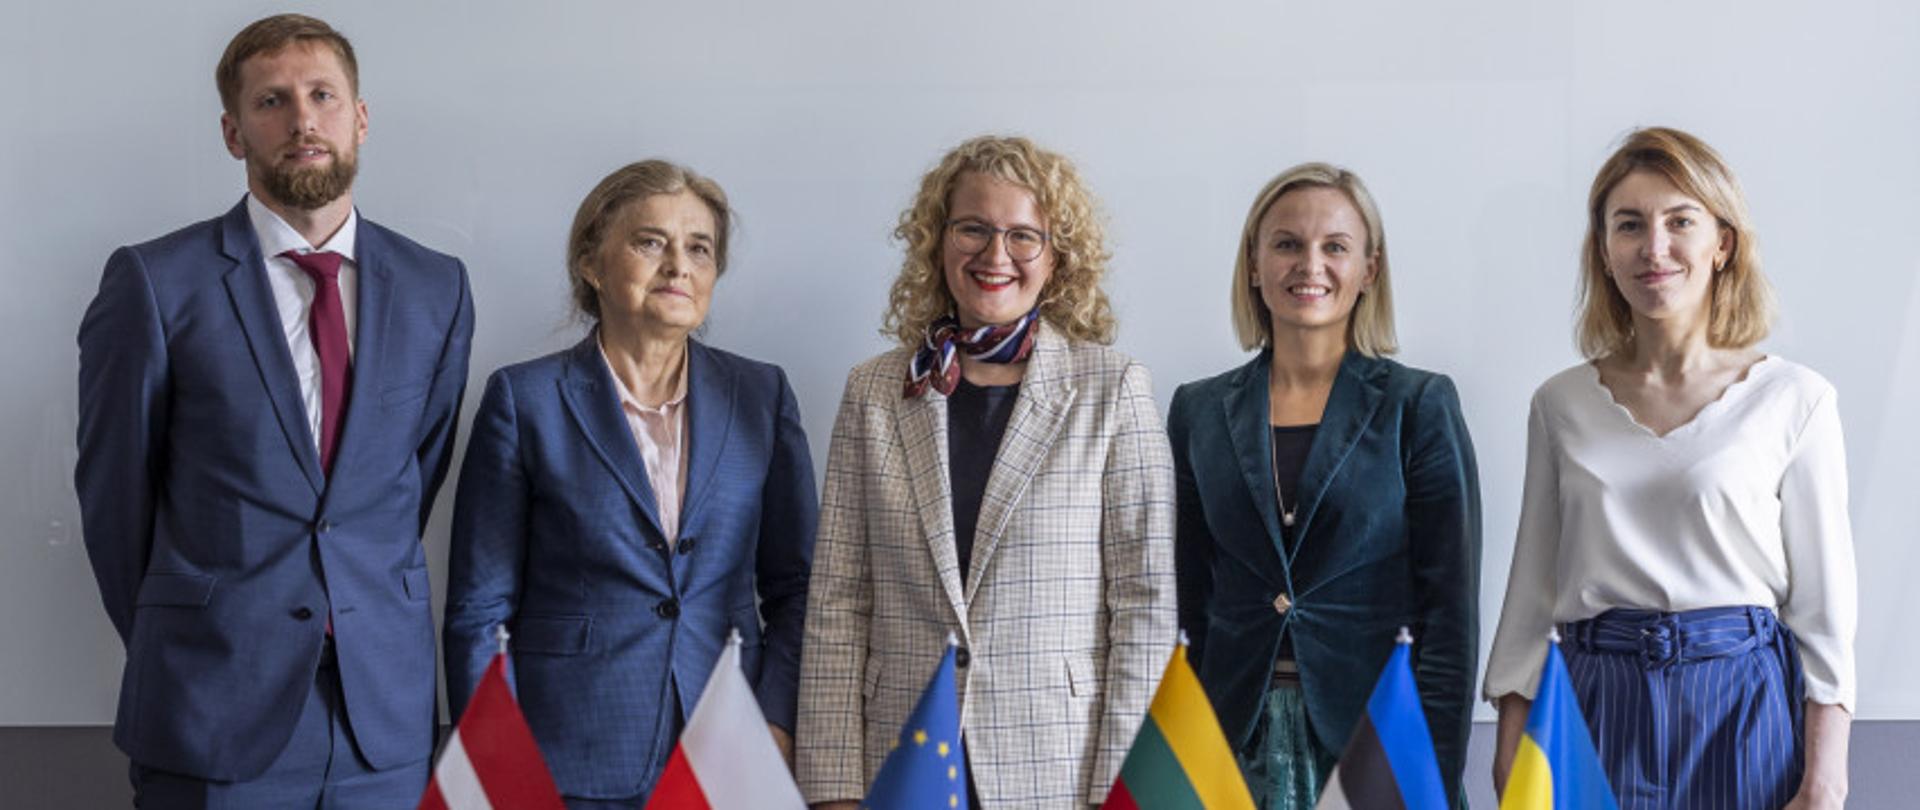 Lietuvos, Latvijos, Estijos, Lenkijos ir Ukrainos valdžios atstovai 